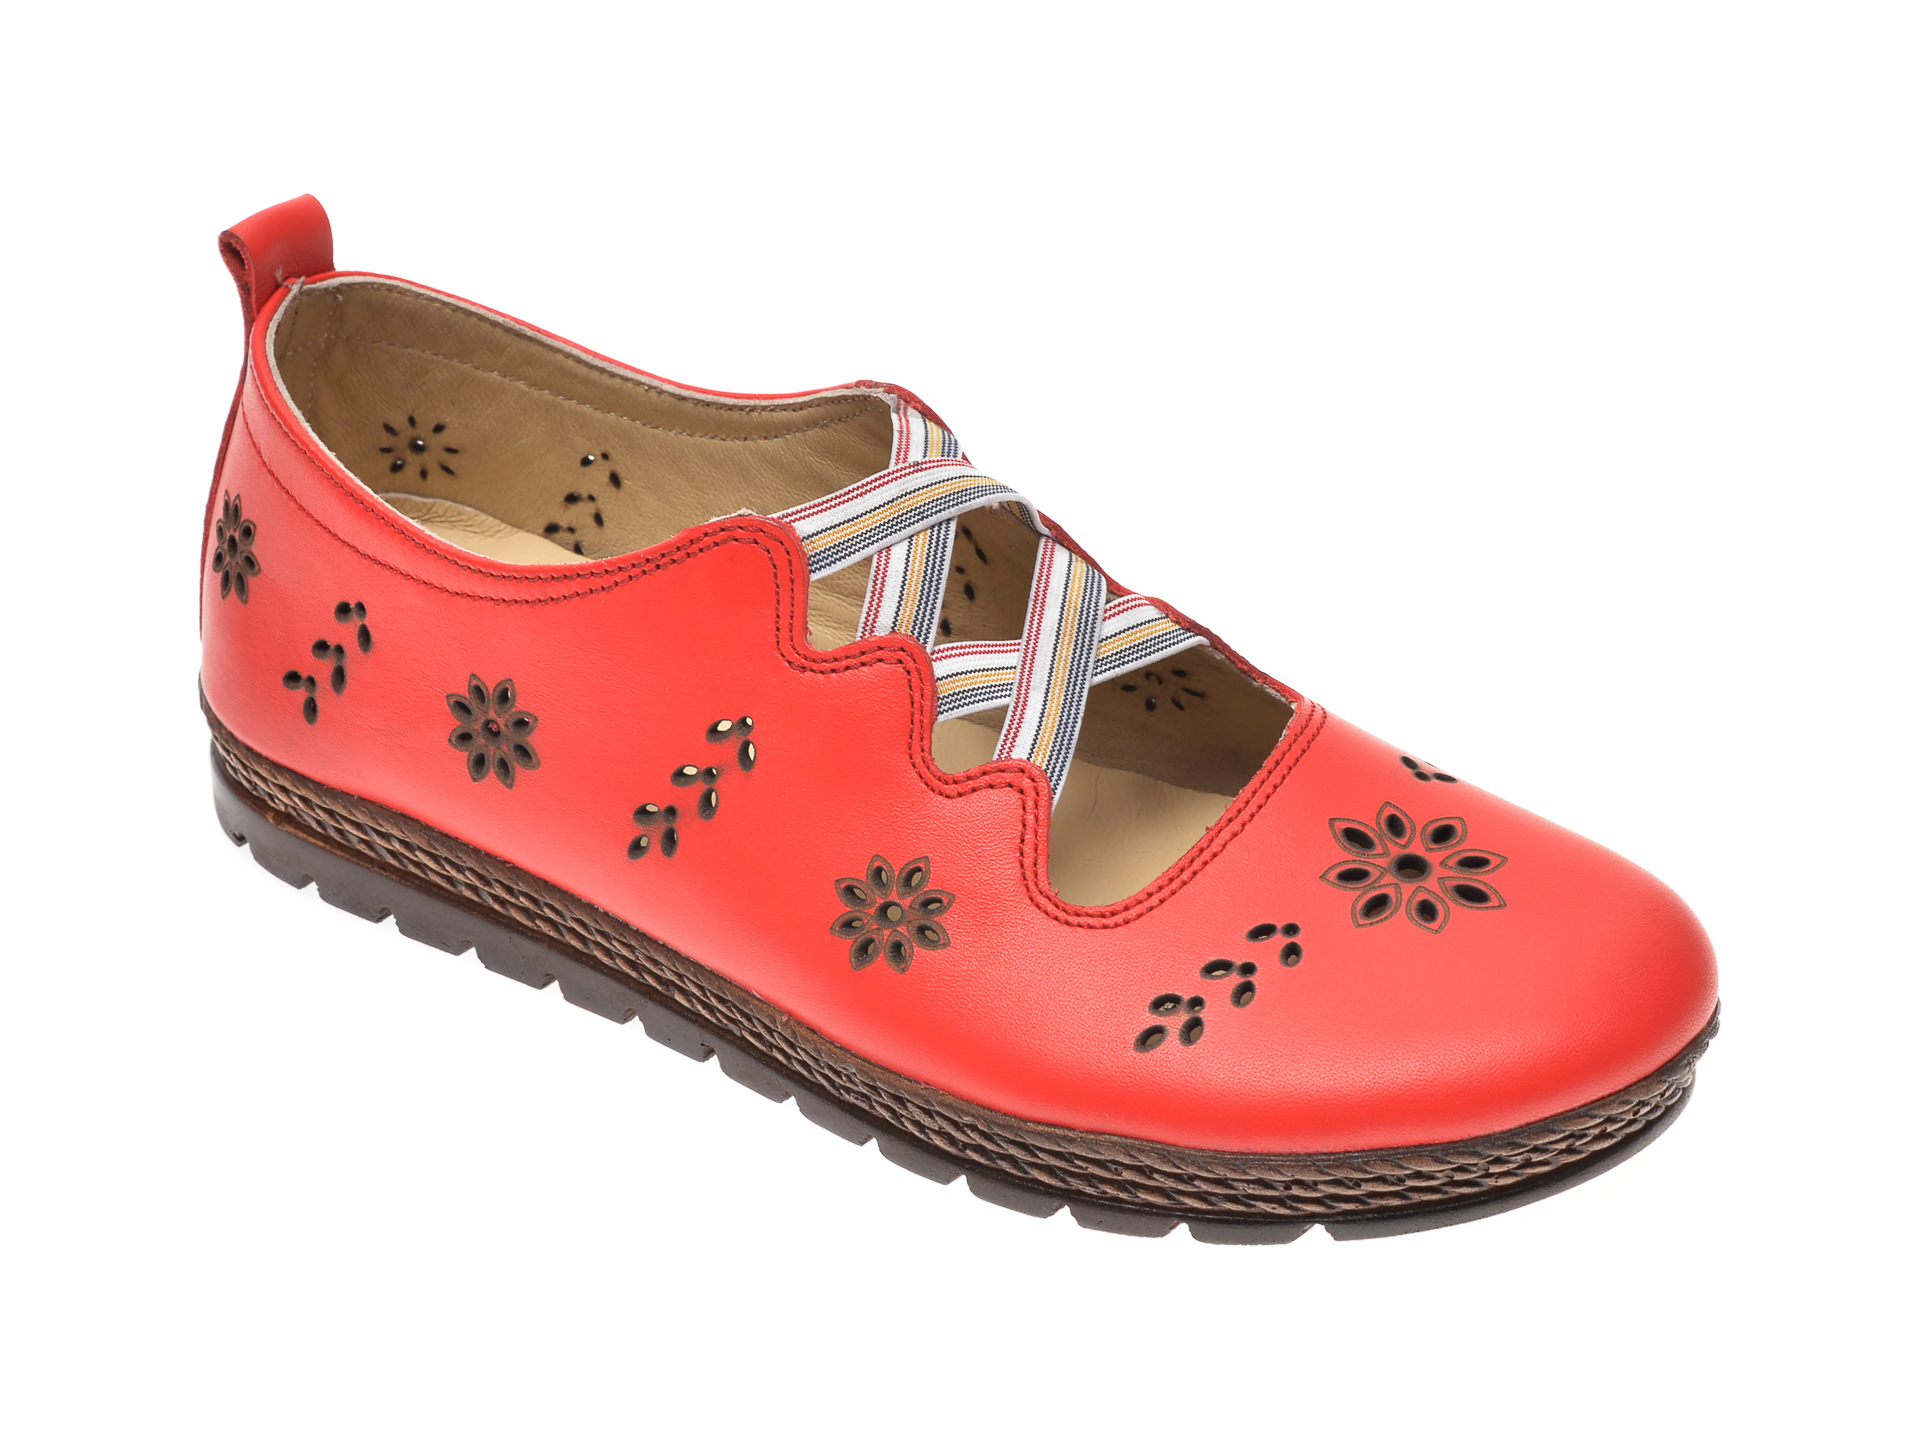 Pantofi PASS COLLECTION rosii, K921041, din piele naturala PASS COLLECTION imagine reduceri